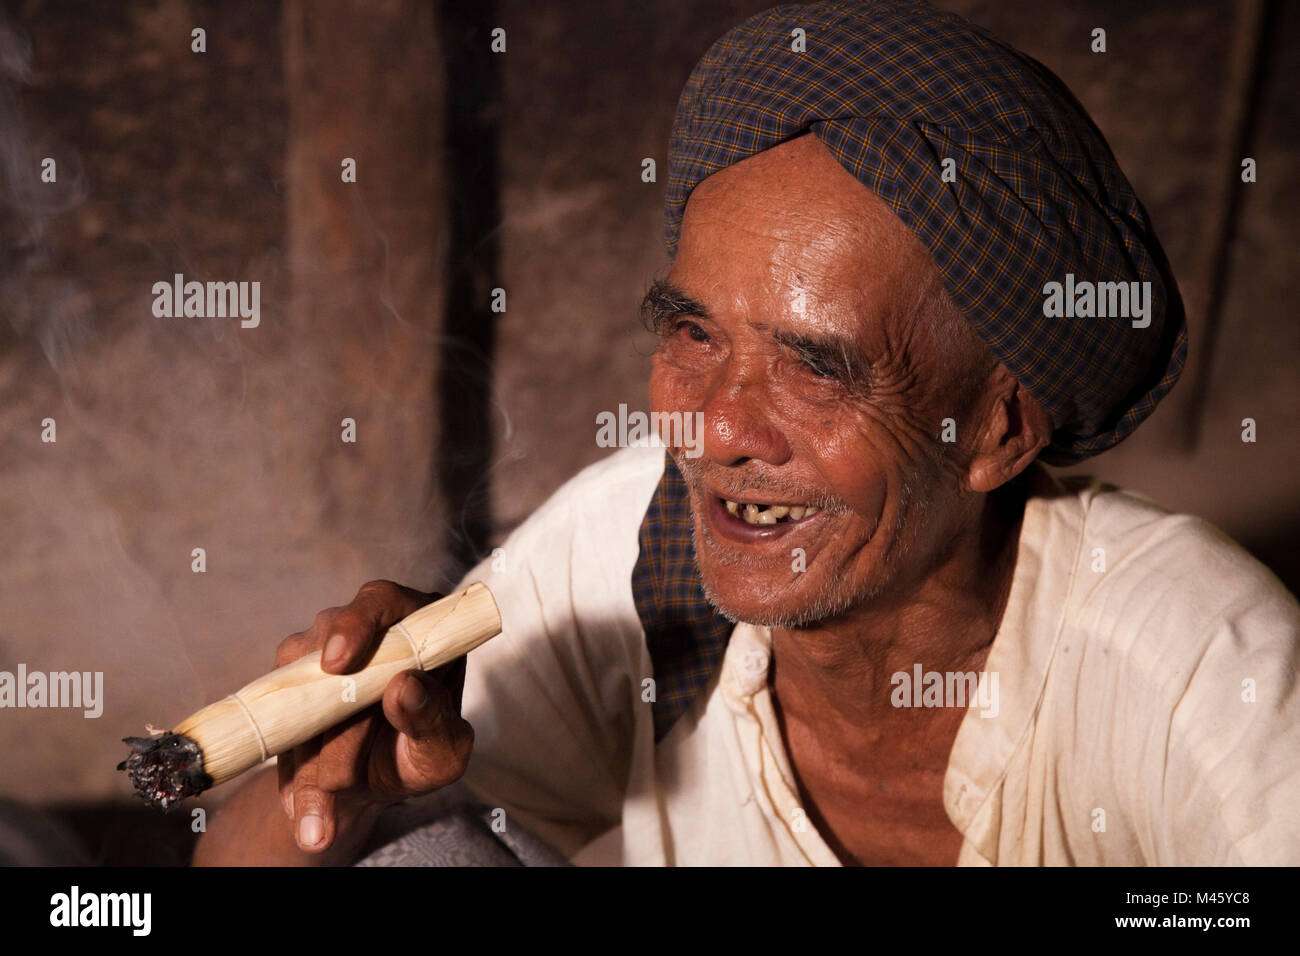 Locale uomo birmano di fumare il sigaro dal fuoco nella sua casa di Bagan Myanmar Foto Stock